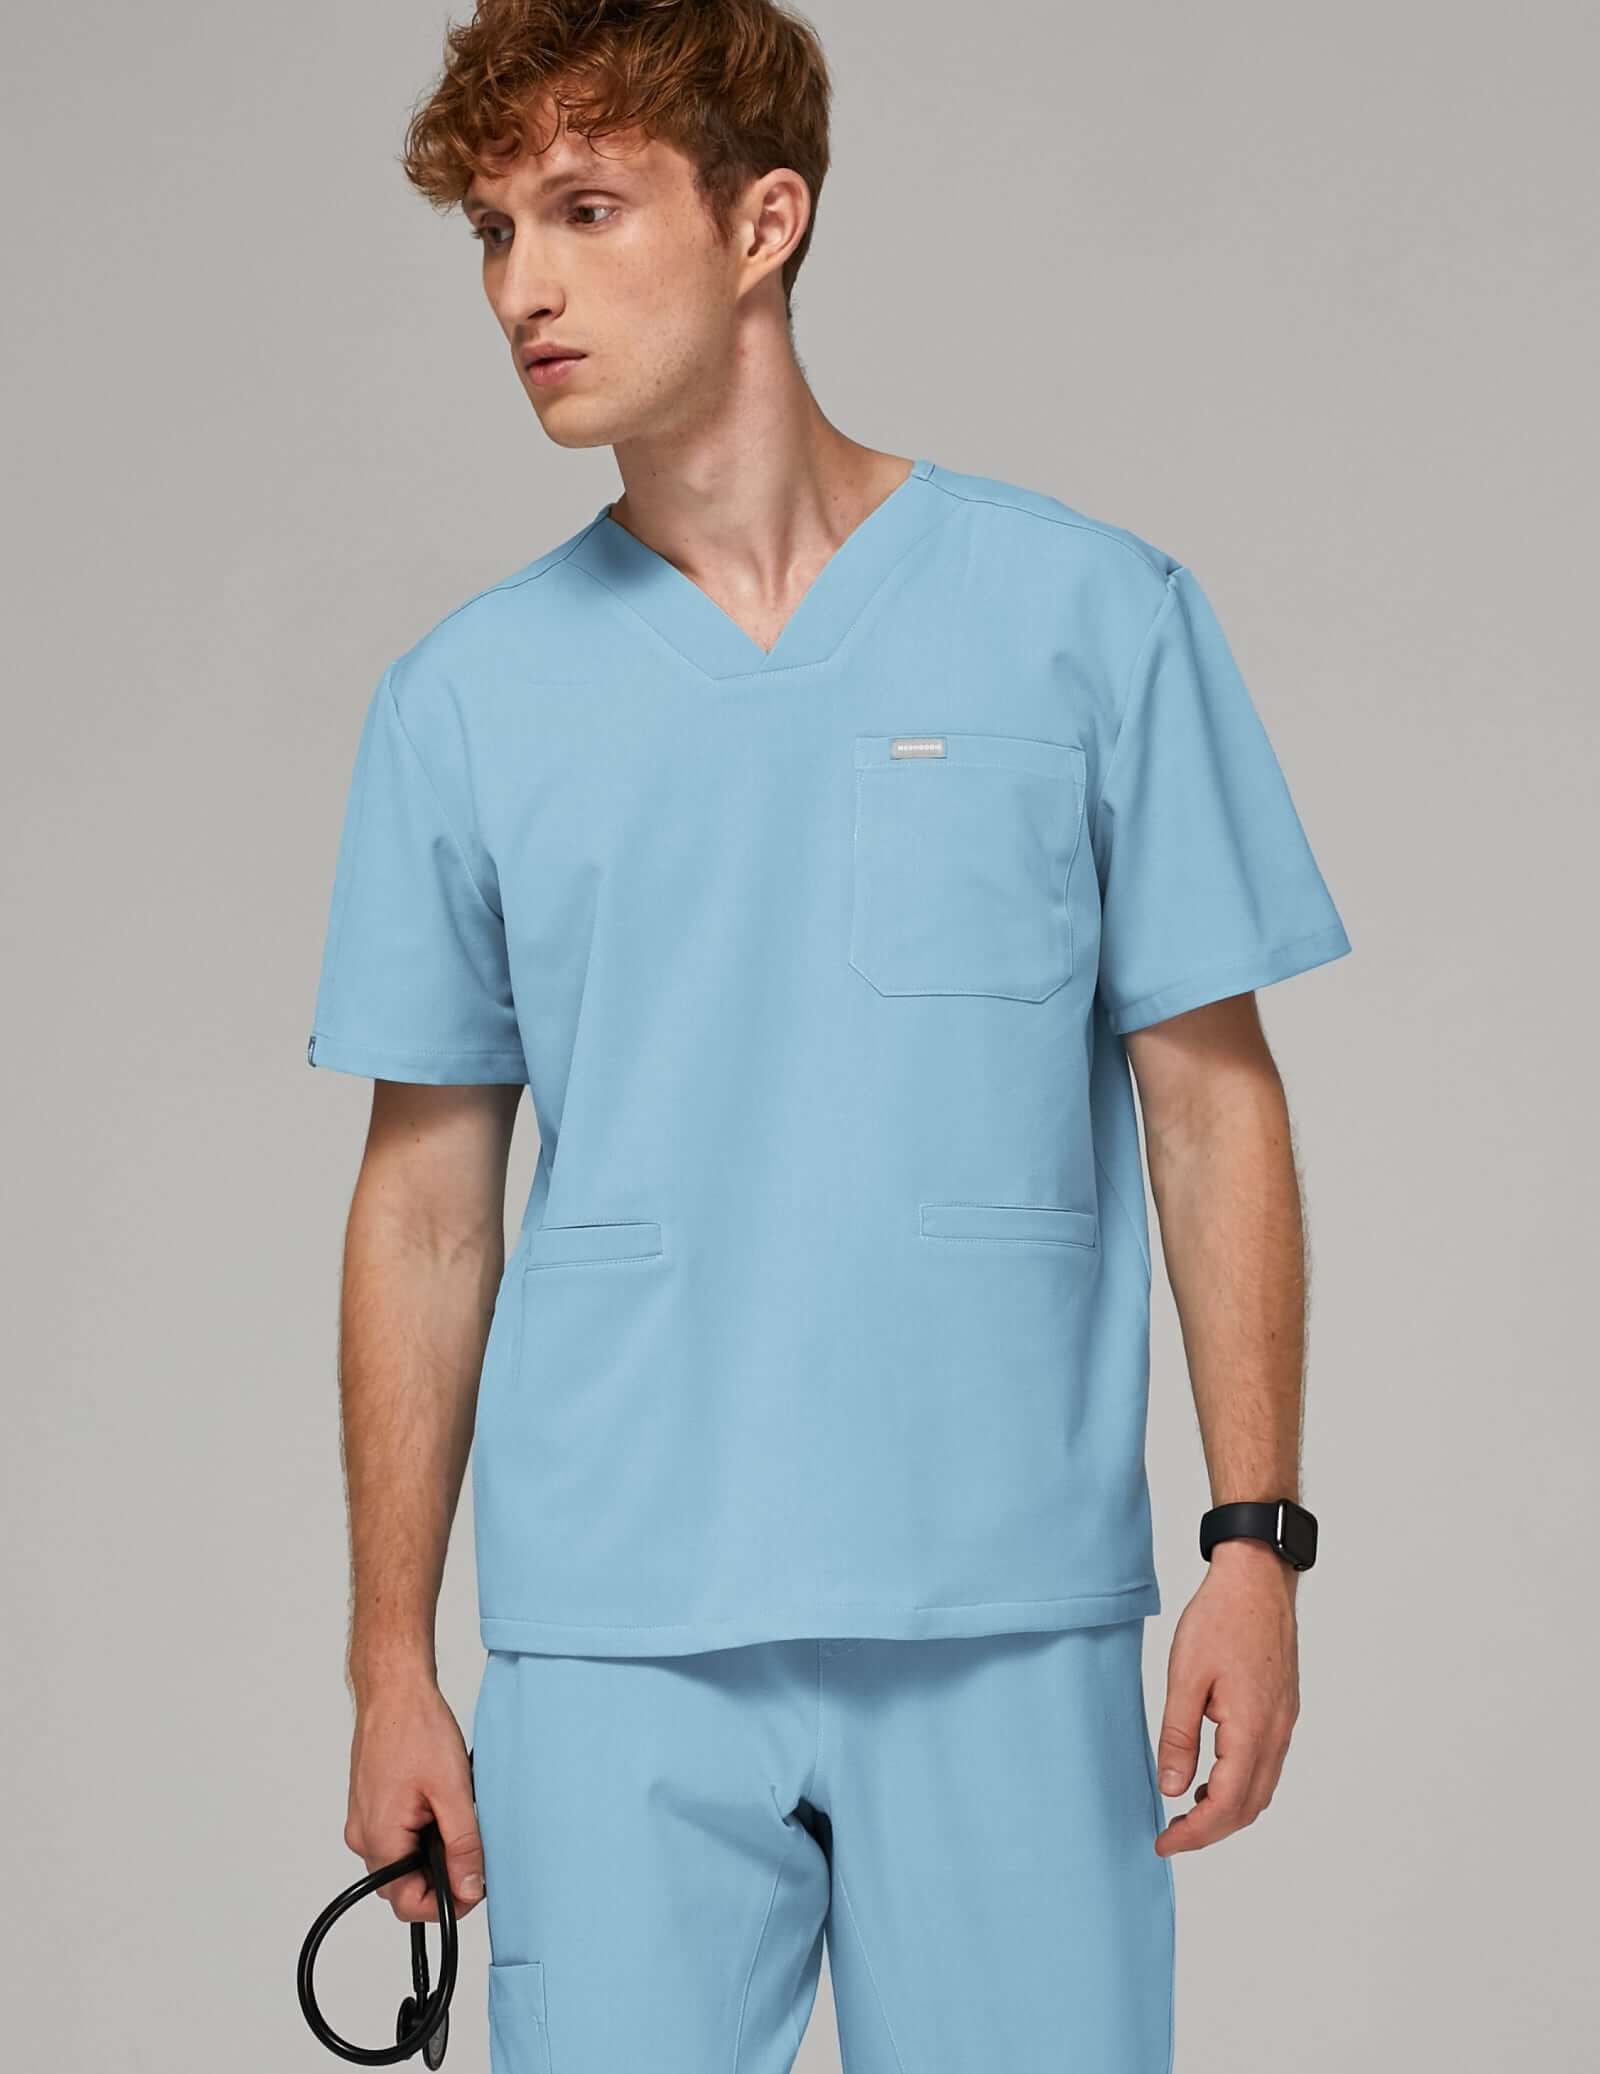 Bluza Medyczna Birbal - SKY BLUE